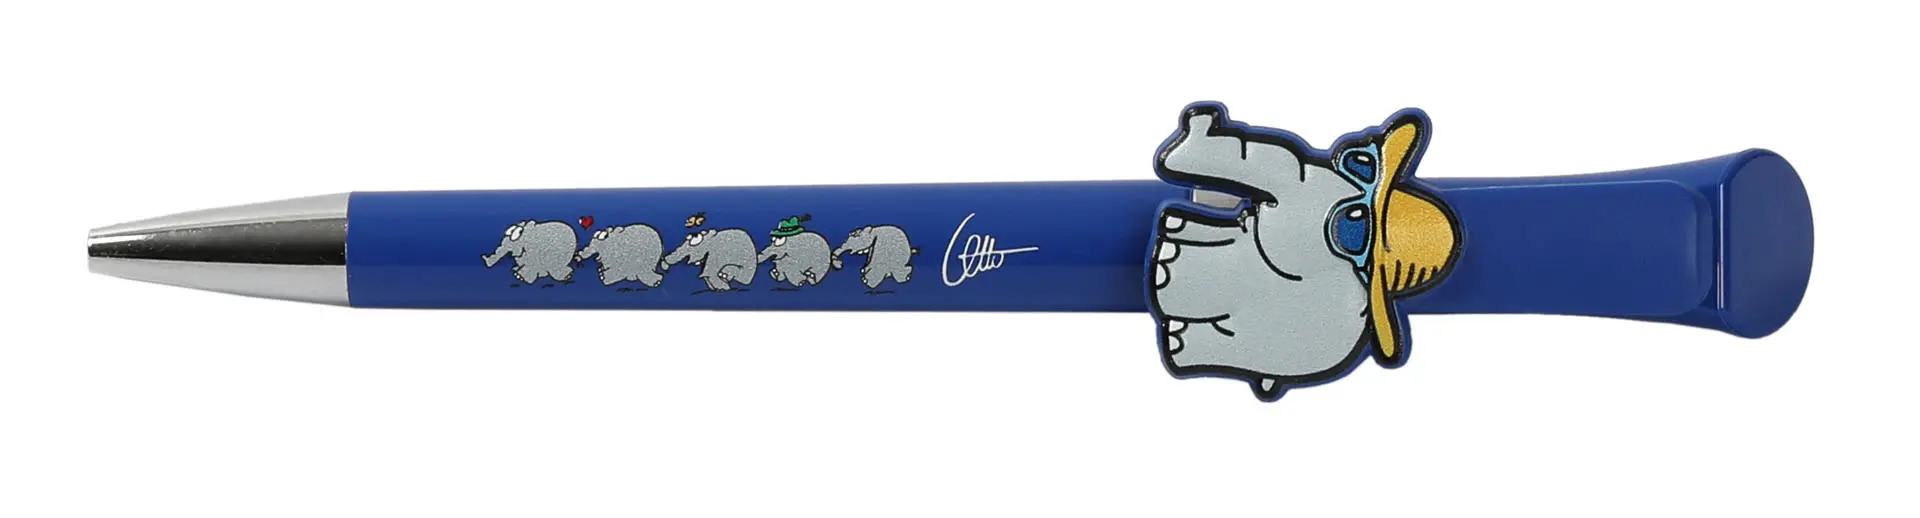 kugelschreiber-logo kugelschreiber-blau-ottifant-individuelle produkte